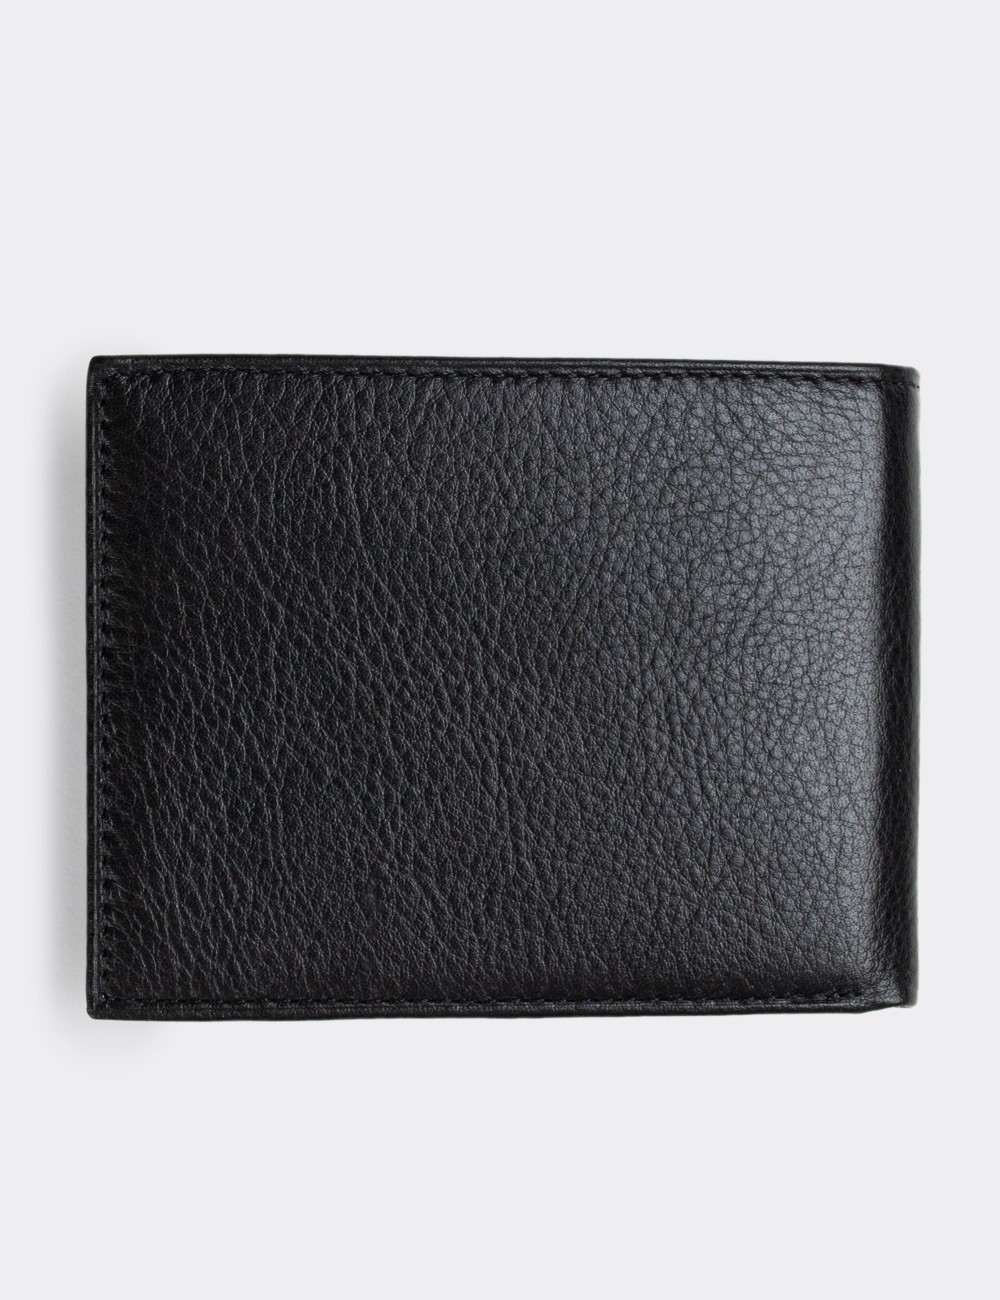  Leather Black Men's Wallet - 00334MSYHZ01